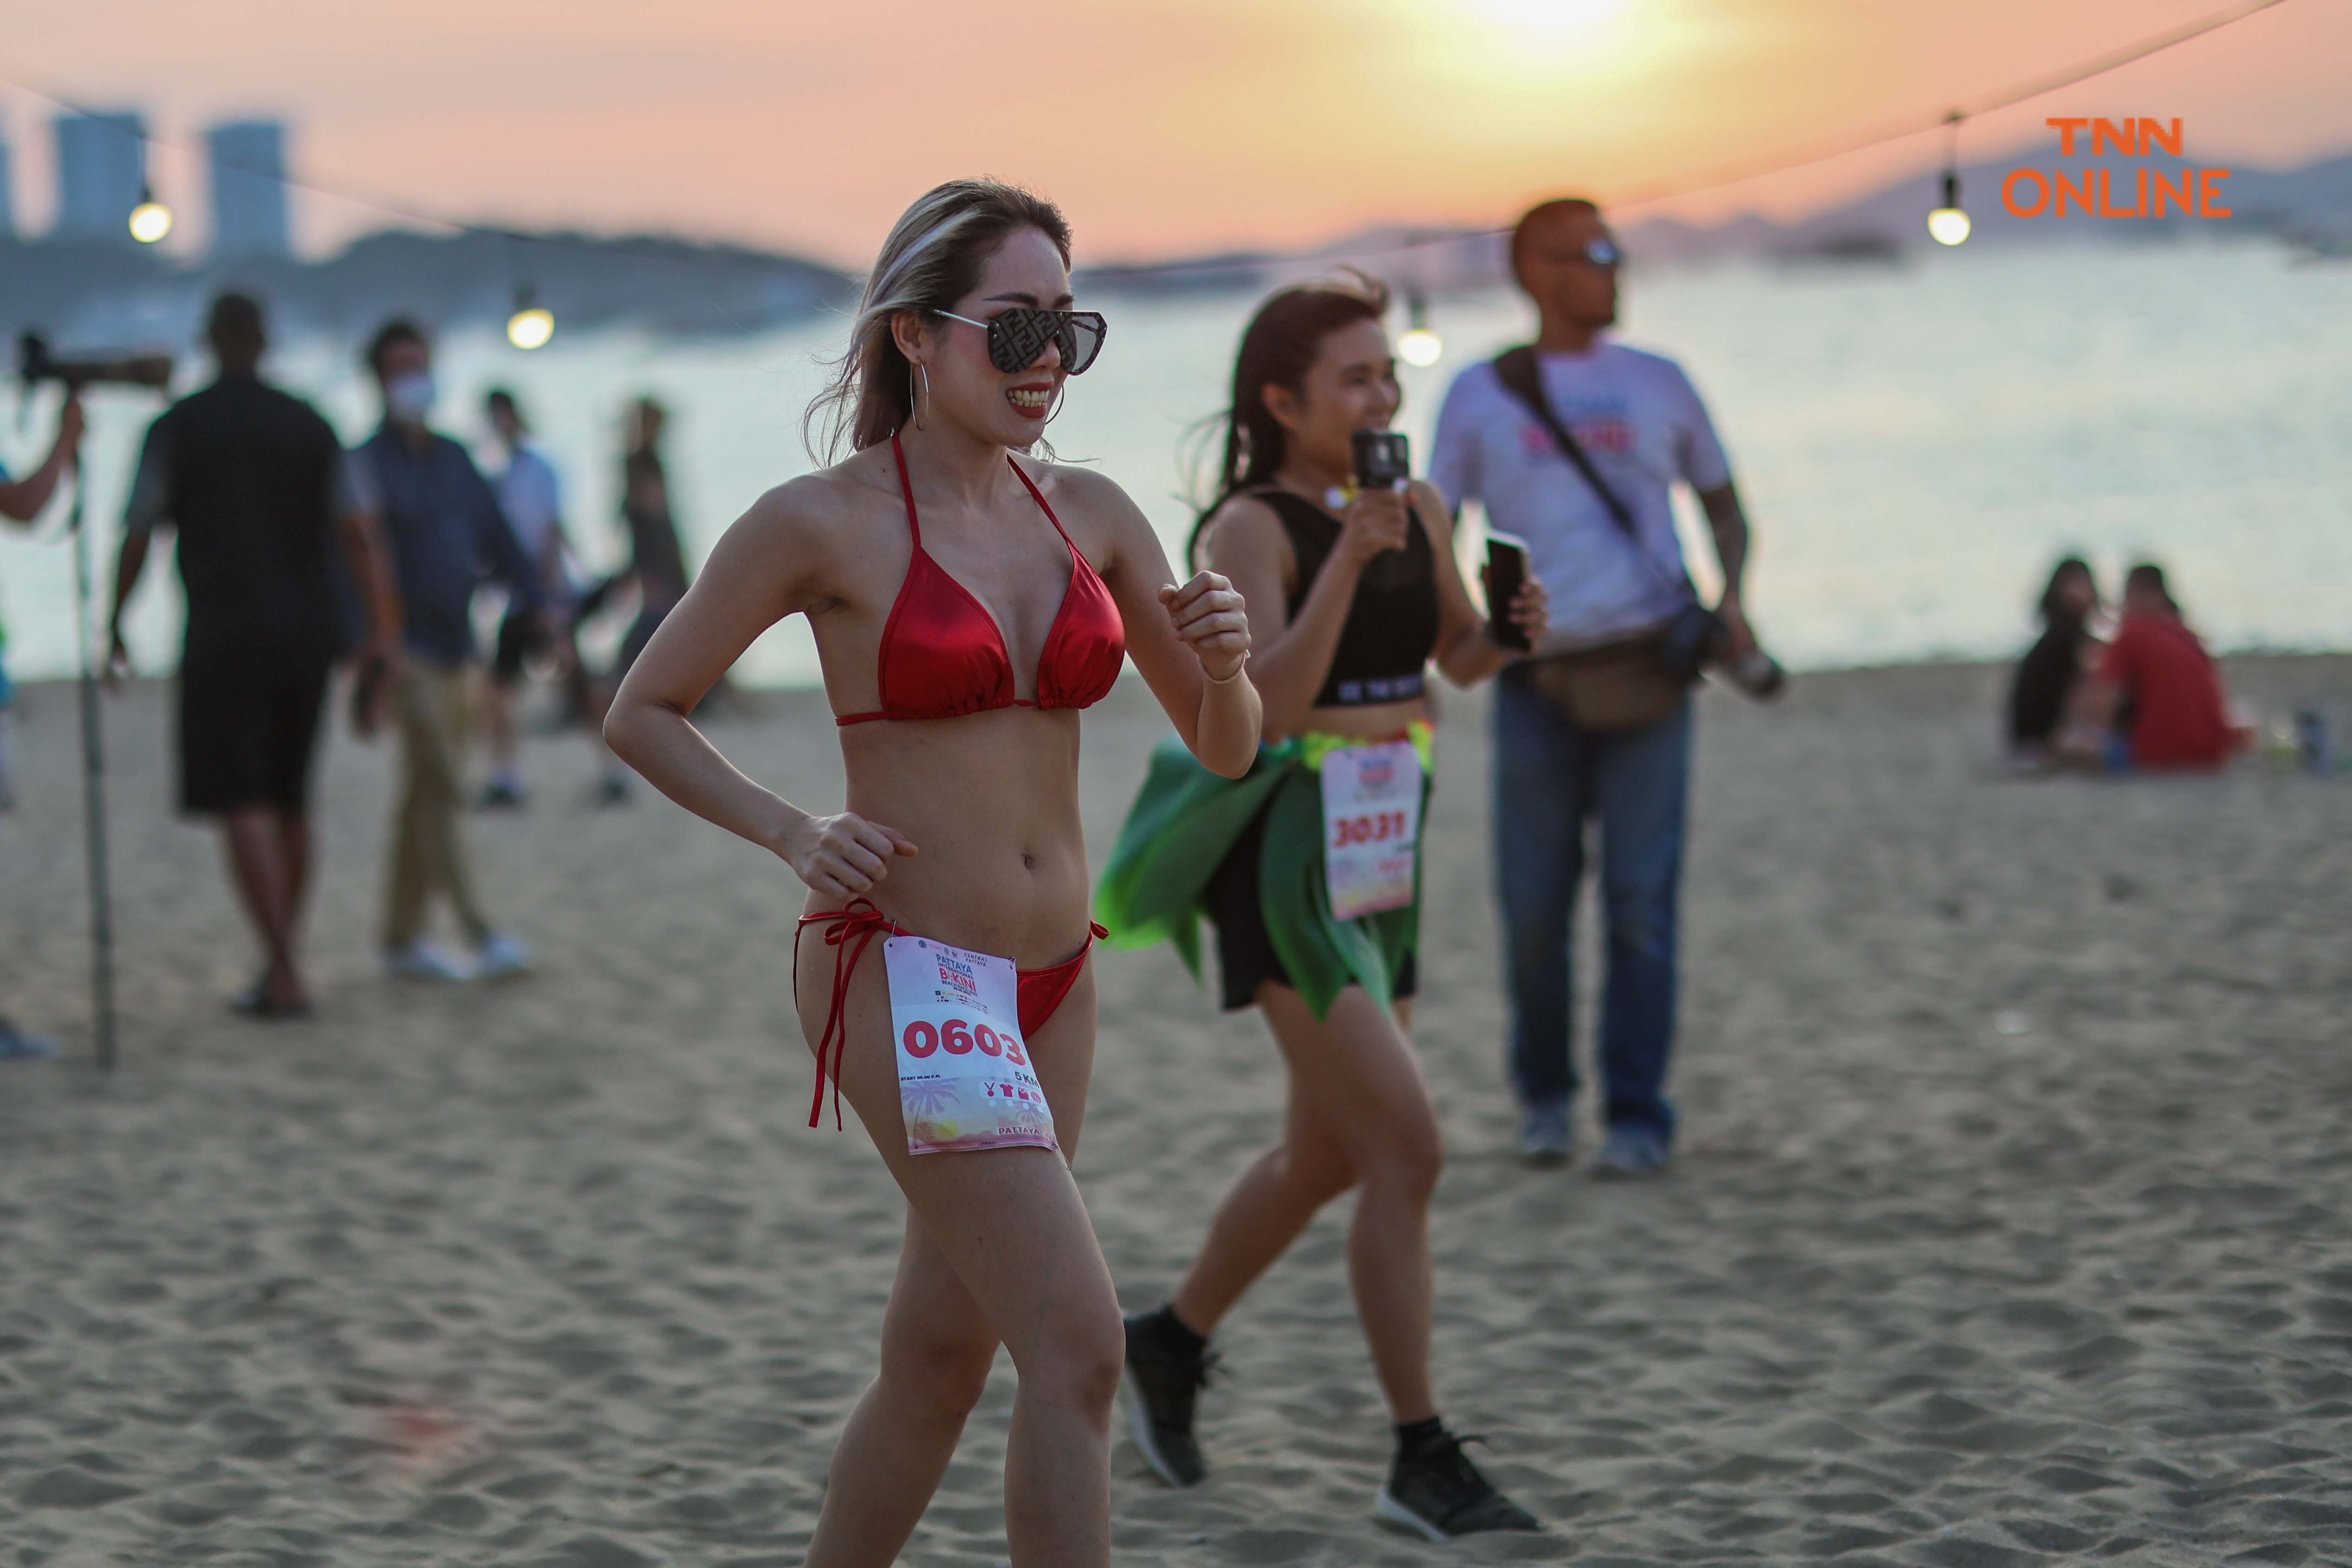 อวดความเซ็กซี่ริมหาดพัทยา นักวิ่งร่วมงาน “PATTAYA INTERNATIONAL BIKINI BEACH RACE 2022”